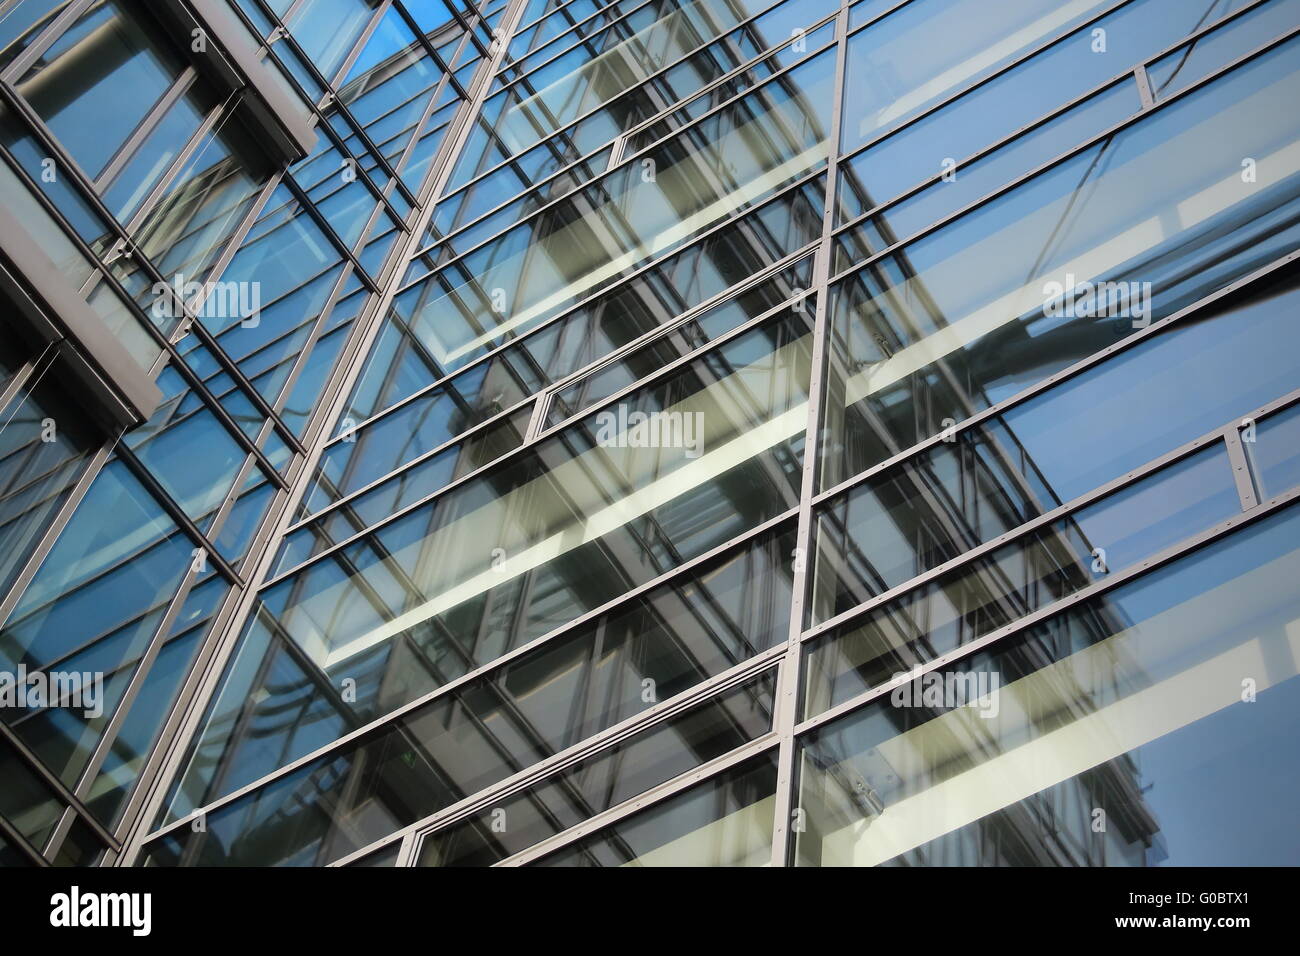 Glass facade Stock Photo